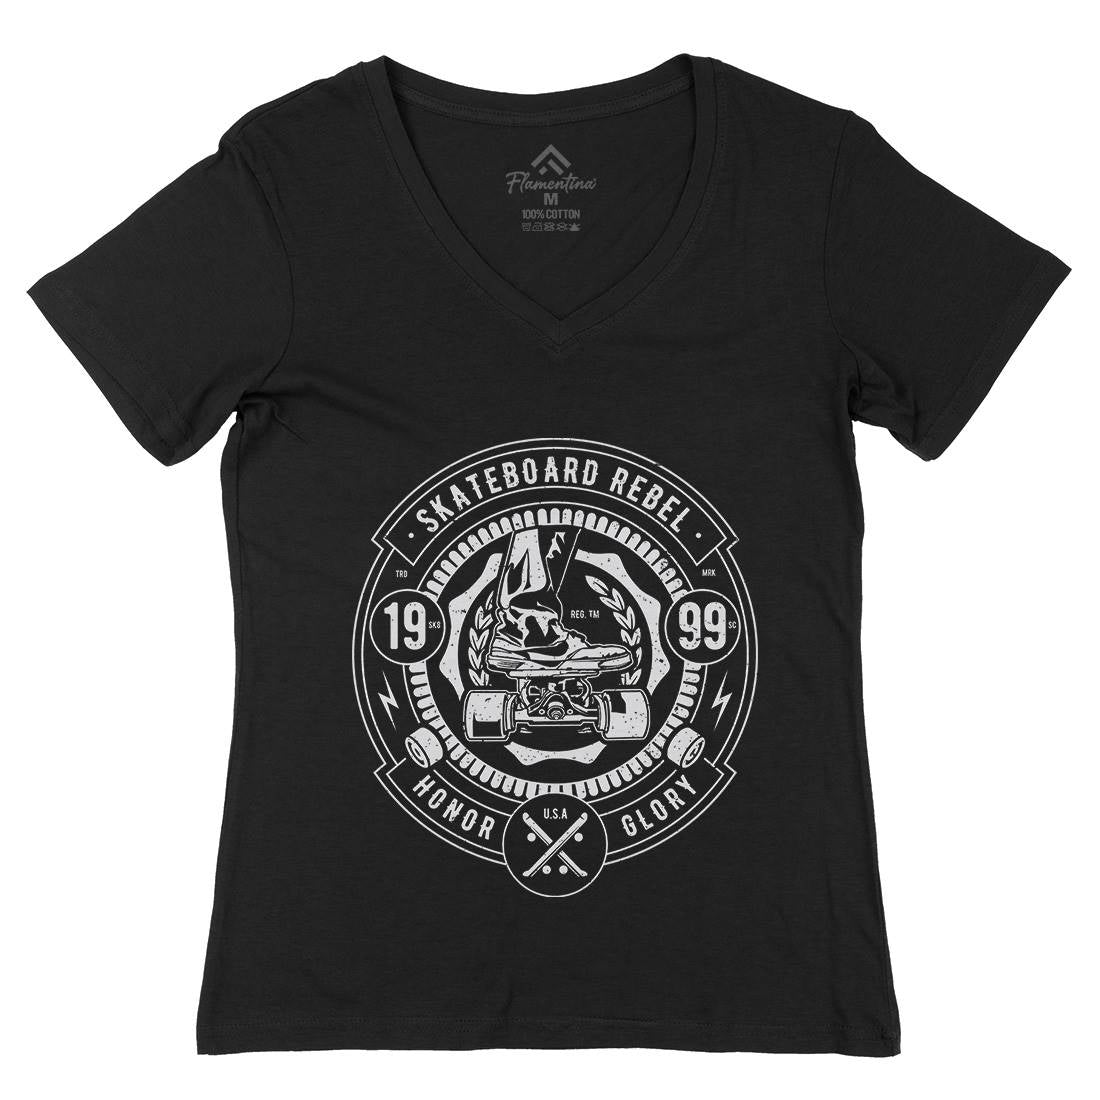 Skateboard Rebel Womens Organic V-Neck T-Shirt Skate A756